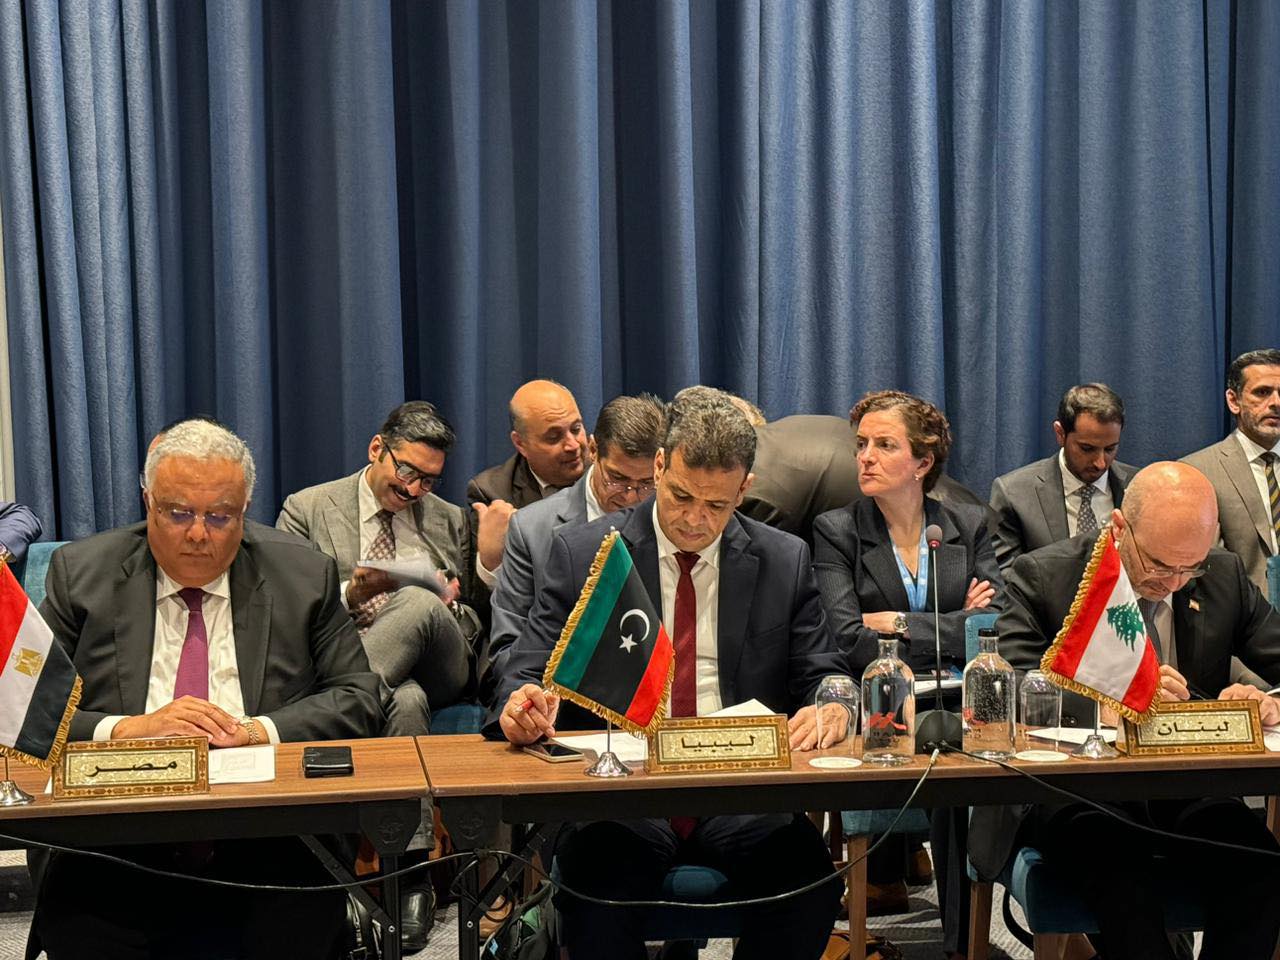 مجلس وزراء الصحة العرب يوافق على اختيار دولة ليبيا لاستضافة أعمال انعقاد الدورة الـ62 لمجلس وزراء الصحة العرب في مارس 2025. 